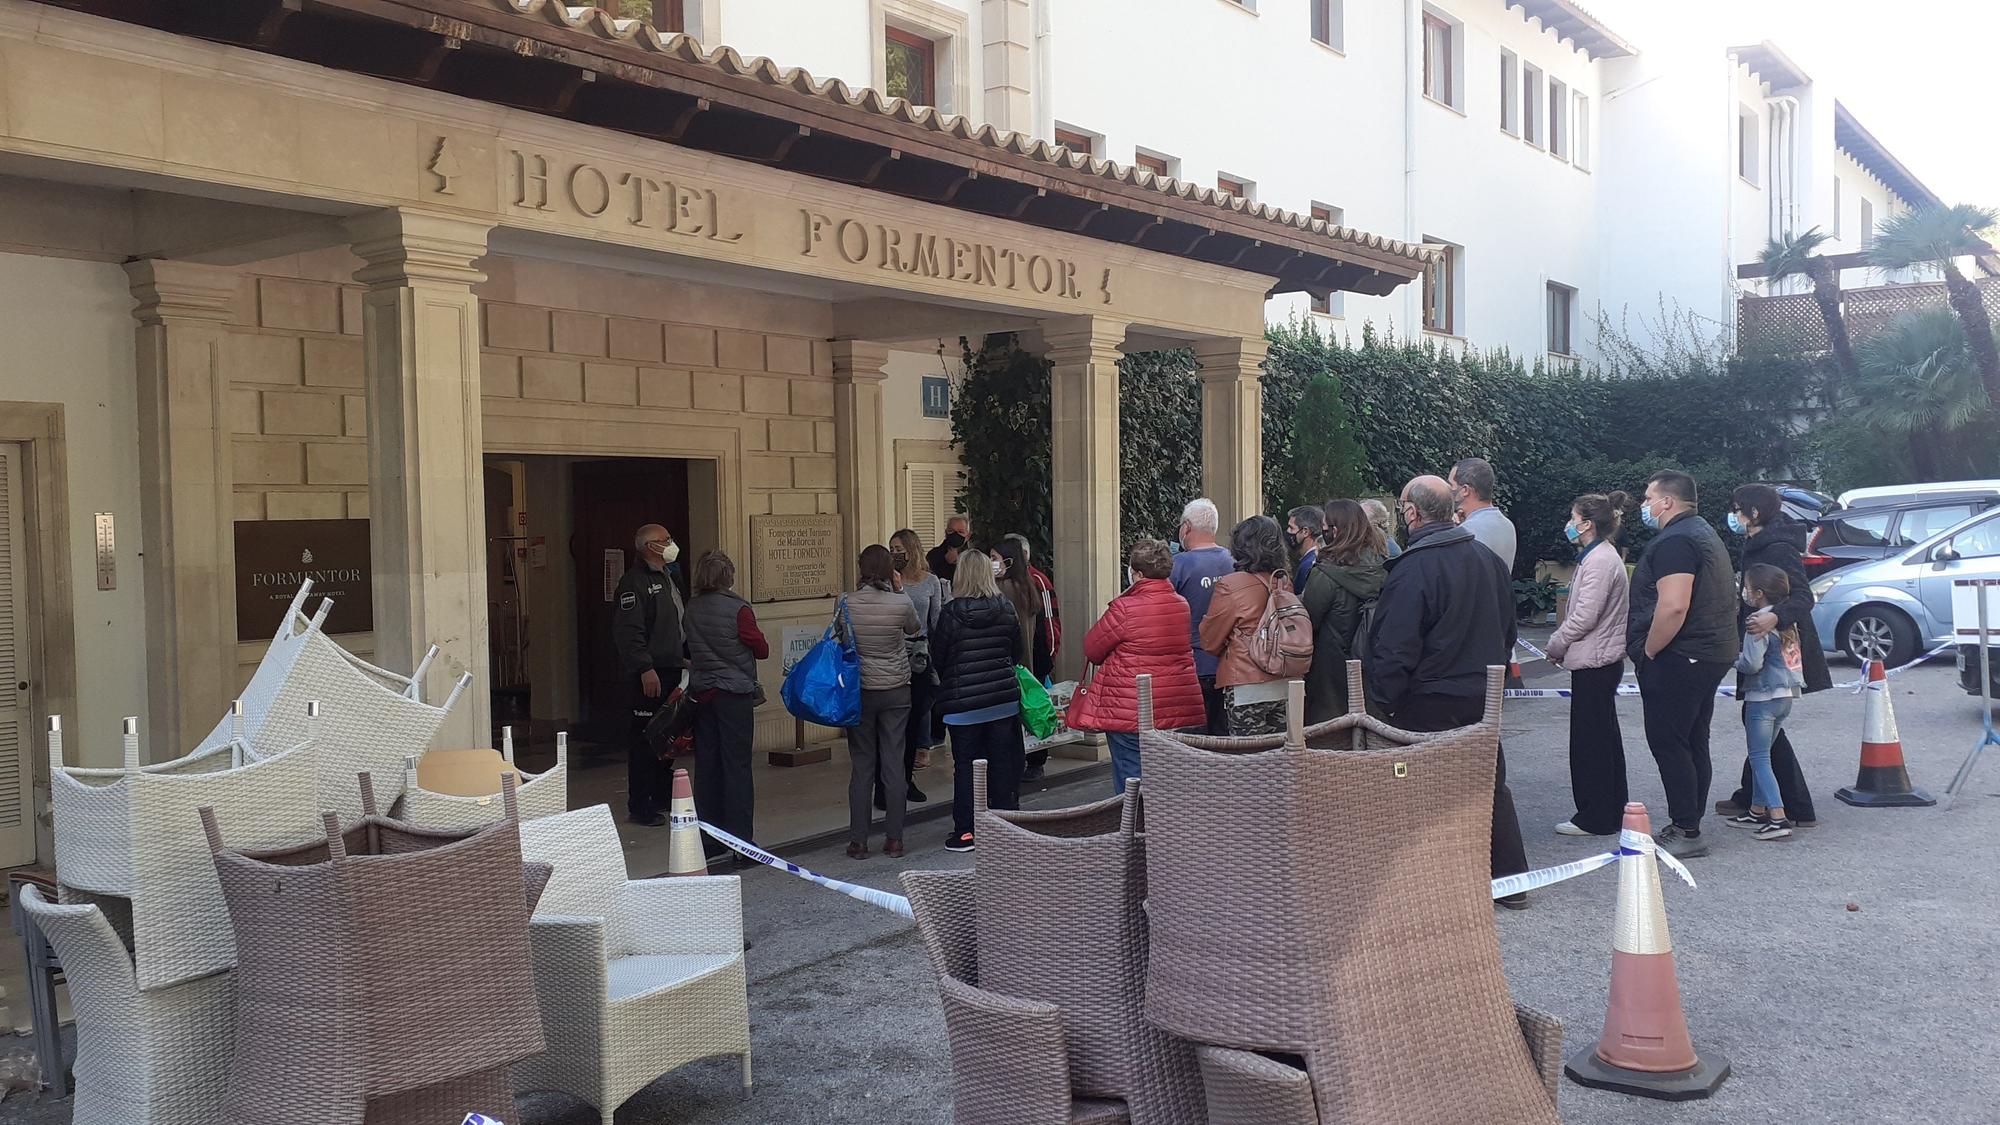 El hotel Formentor vende todos sus enseres a precio de ganga